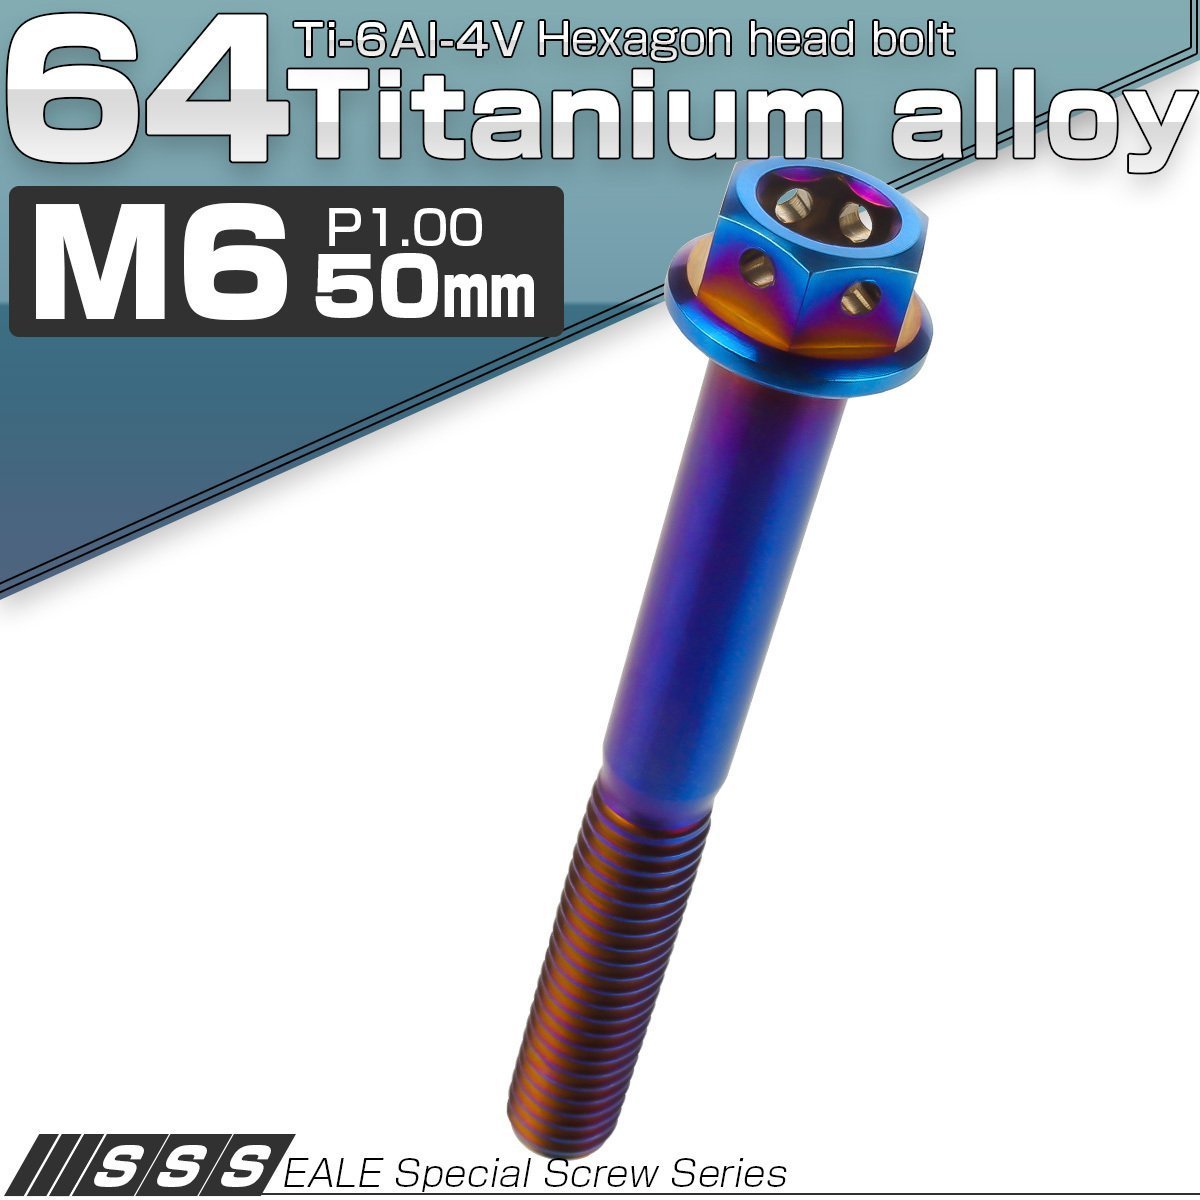 64チタン M6×50mm P1.00 デザイン六角ボルト 六角穴付きボルト フランジ付き 焼きチタン風 Ti6Al-4V JA740_画像1